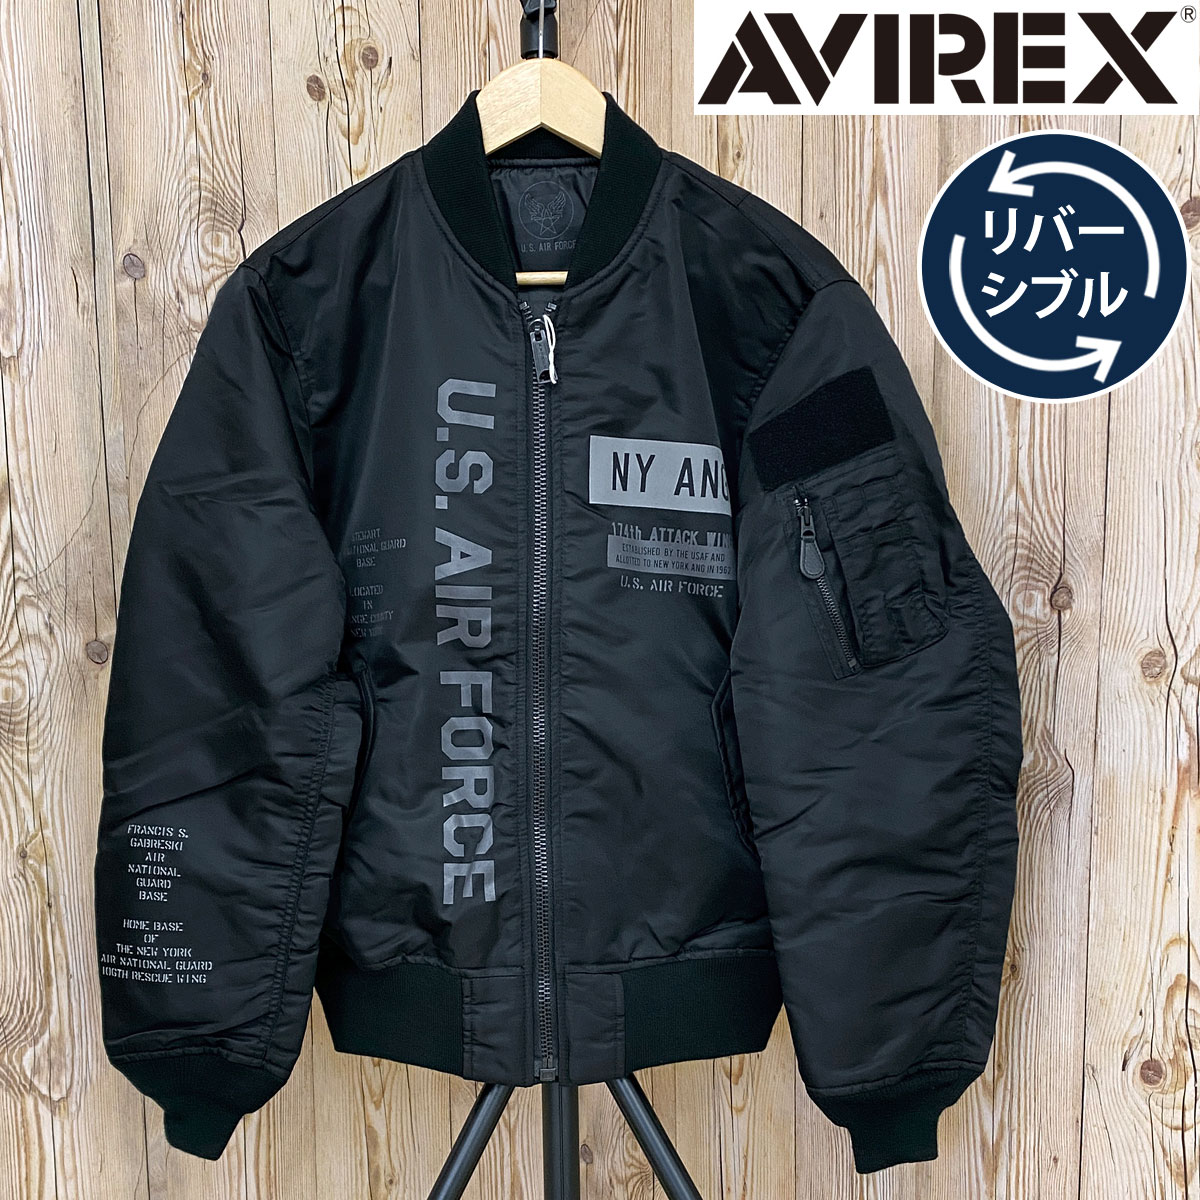 送料無料 AVIREX アヴィレックス MA1 -REFLECT STENCIL-リバーシブル ジャケット ミリタリー フライト ジャケット アウター ブルゾン メンズ ブランド アビレックス MC